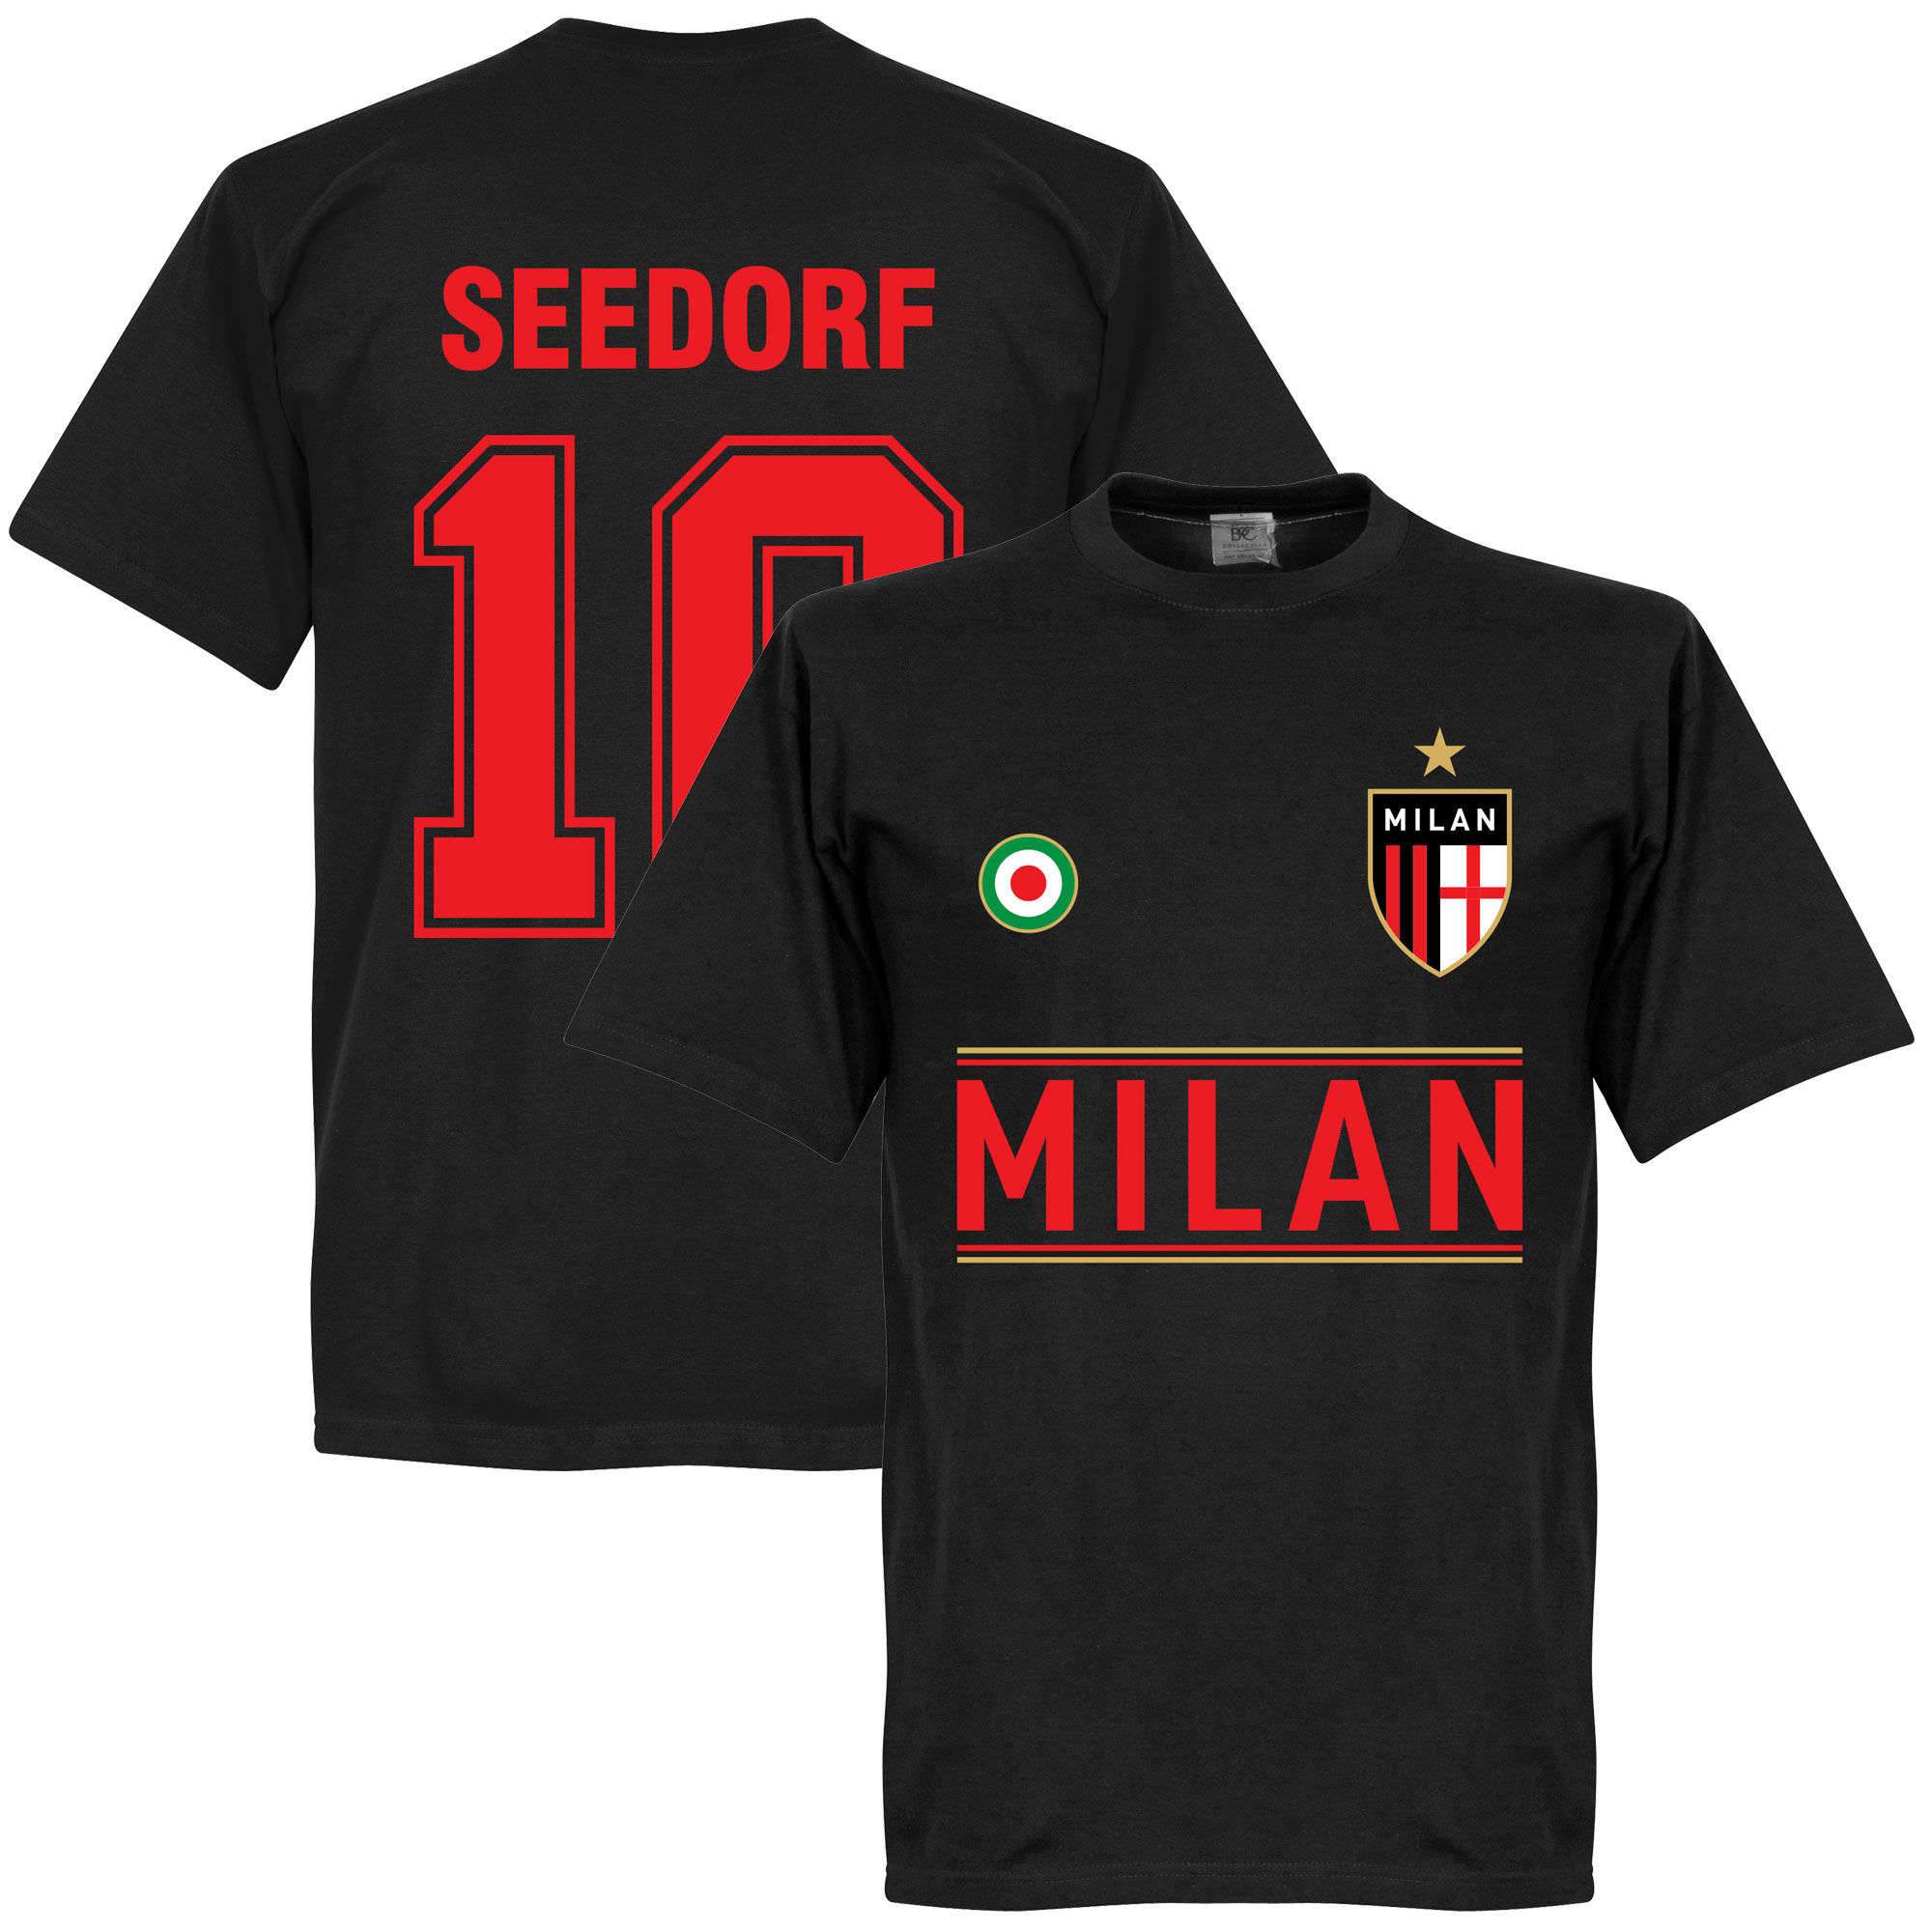 AC Milán - Tričko - Clarence Seedorf, číslo 10, černé